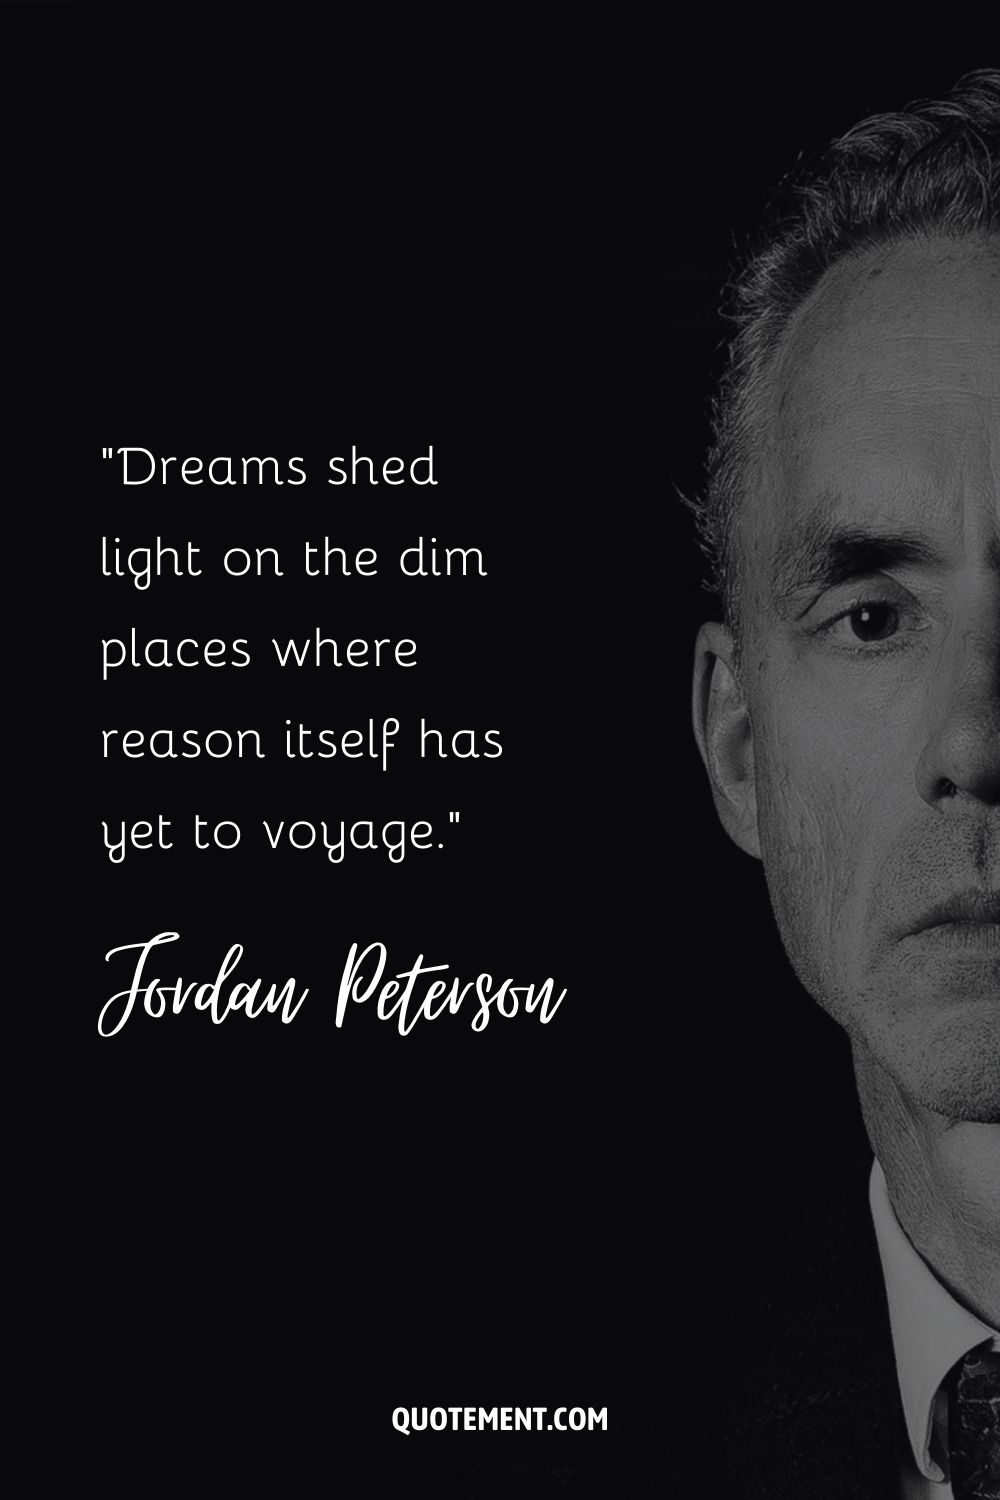 Cita de Jordan Peterson sobre los sueños.